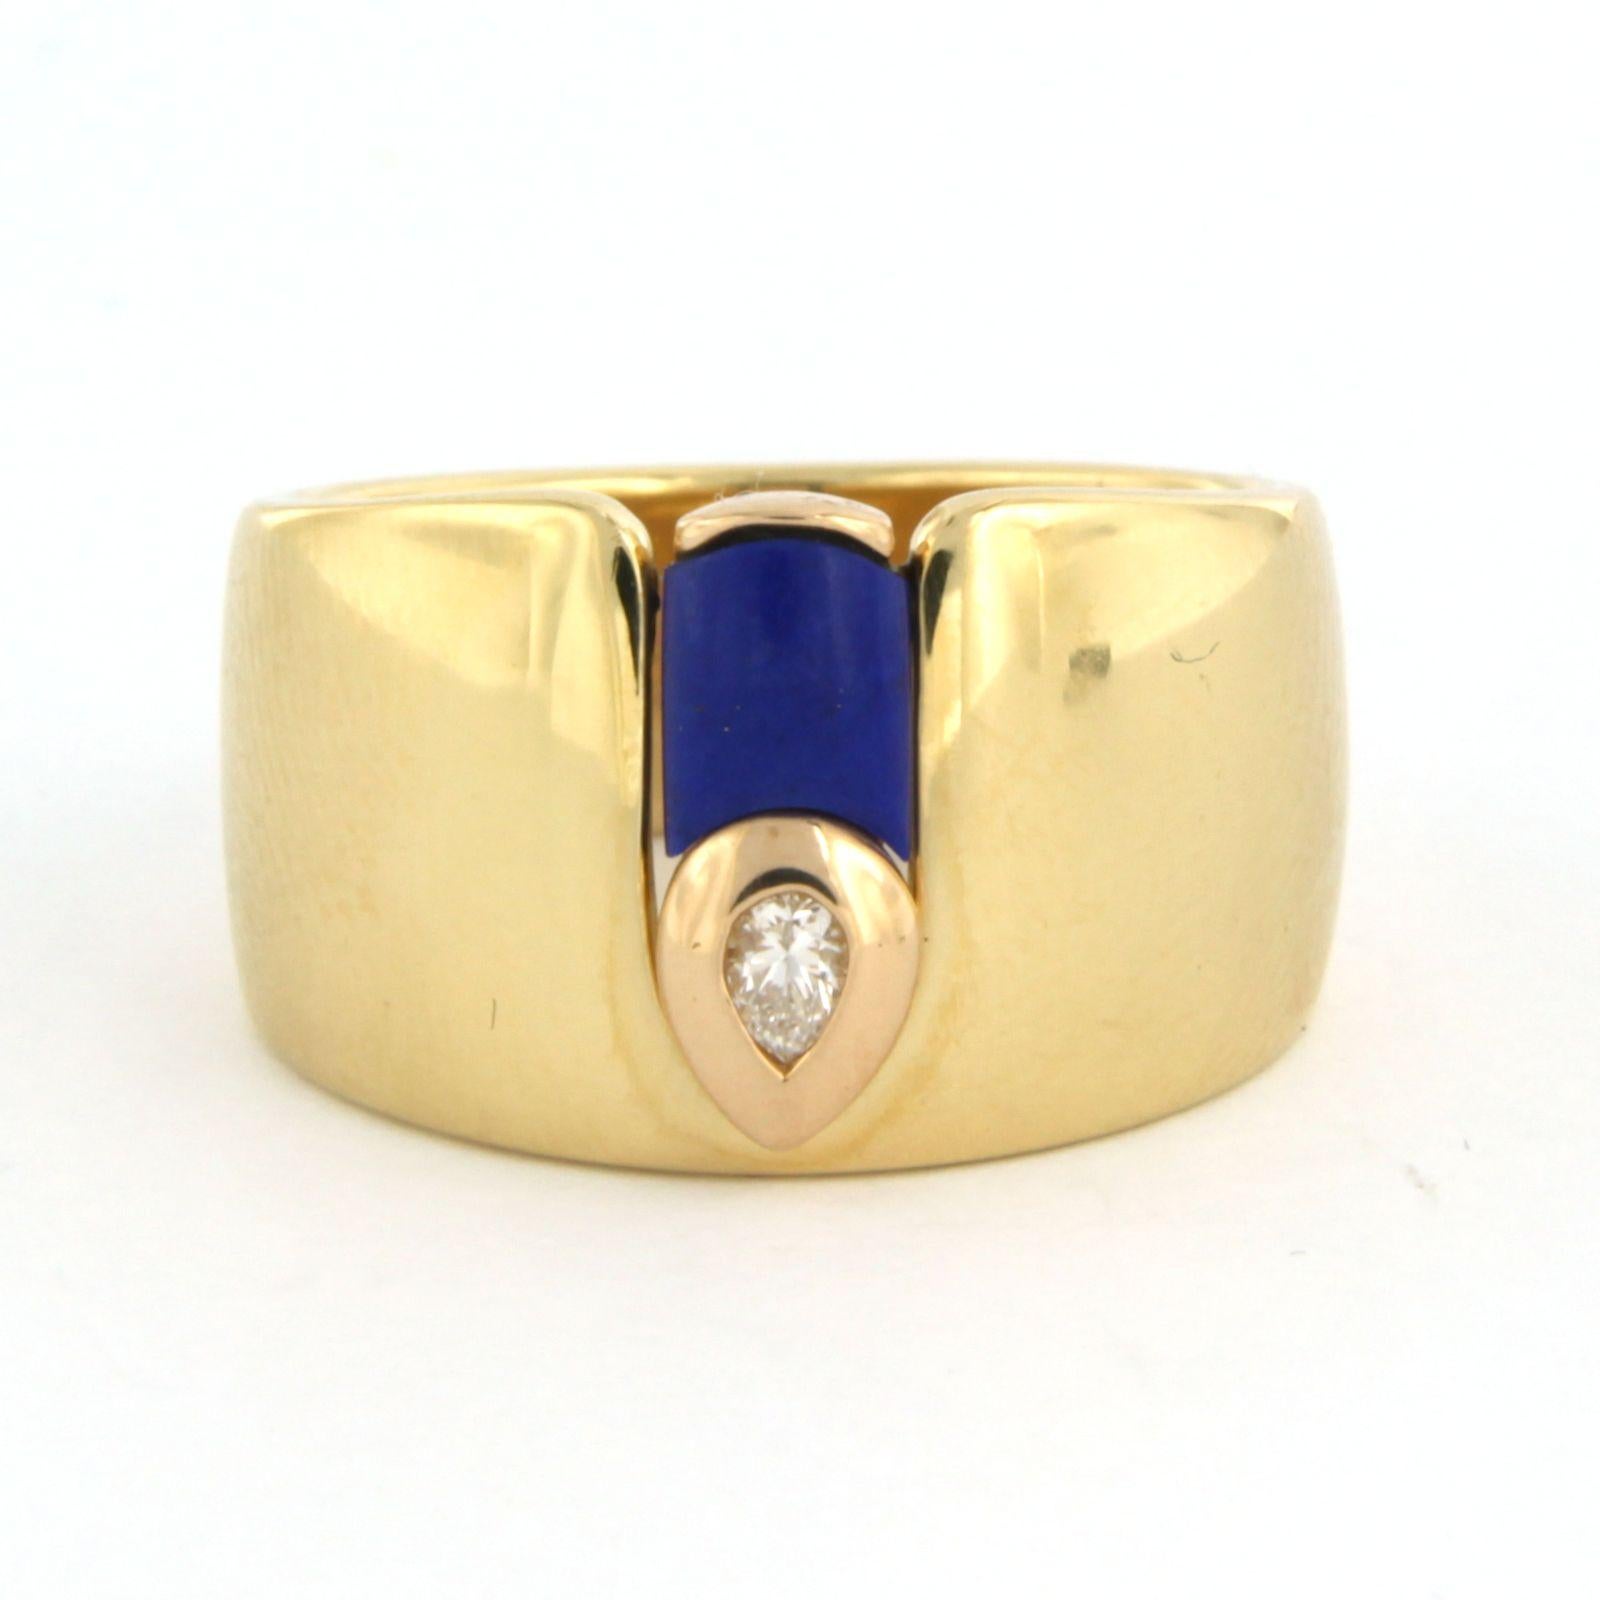 Bague en or jaune 18k sertie d'un lapis lazuli et d'un diamant poire 0.07 crt F/G VS/SI - taille U.S. 7 - EU. 17.25 (54)

description détaillée :

Le haut de l'anneau mesure 1,2 cm de large et 3,7 mm de haut.

Taille de l'anneau : 7 pour les